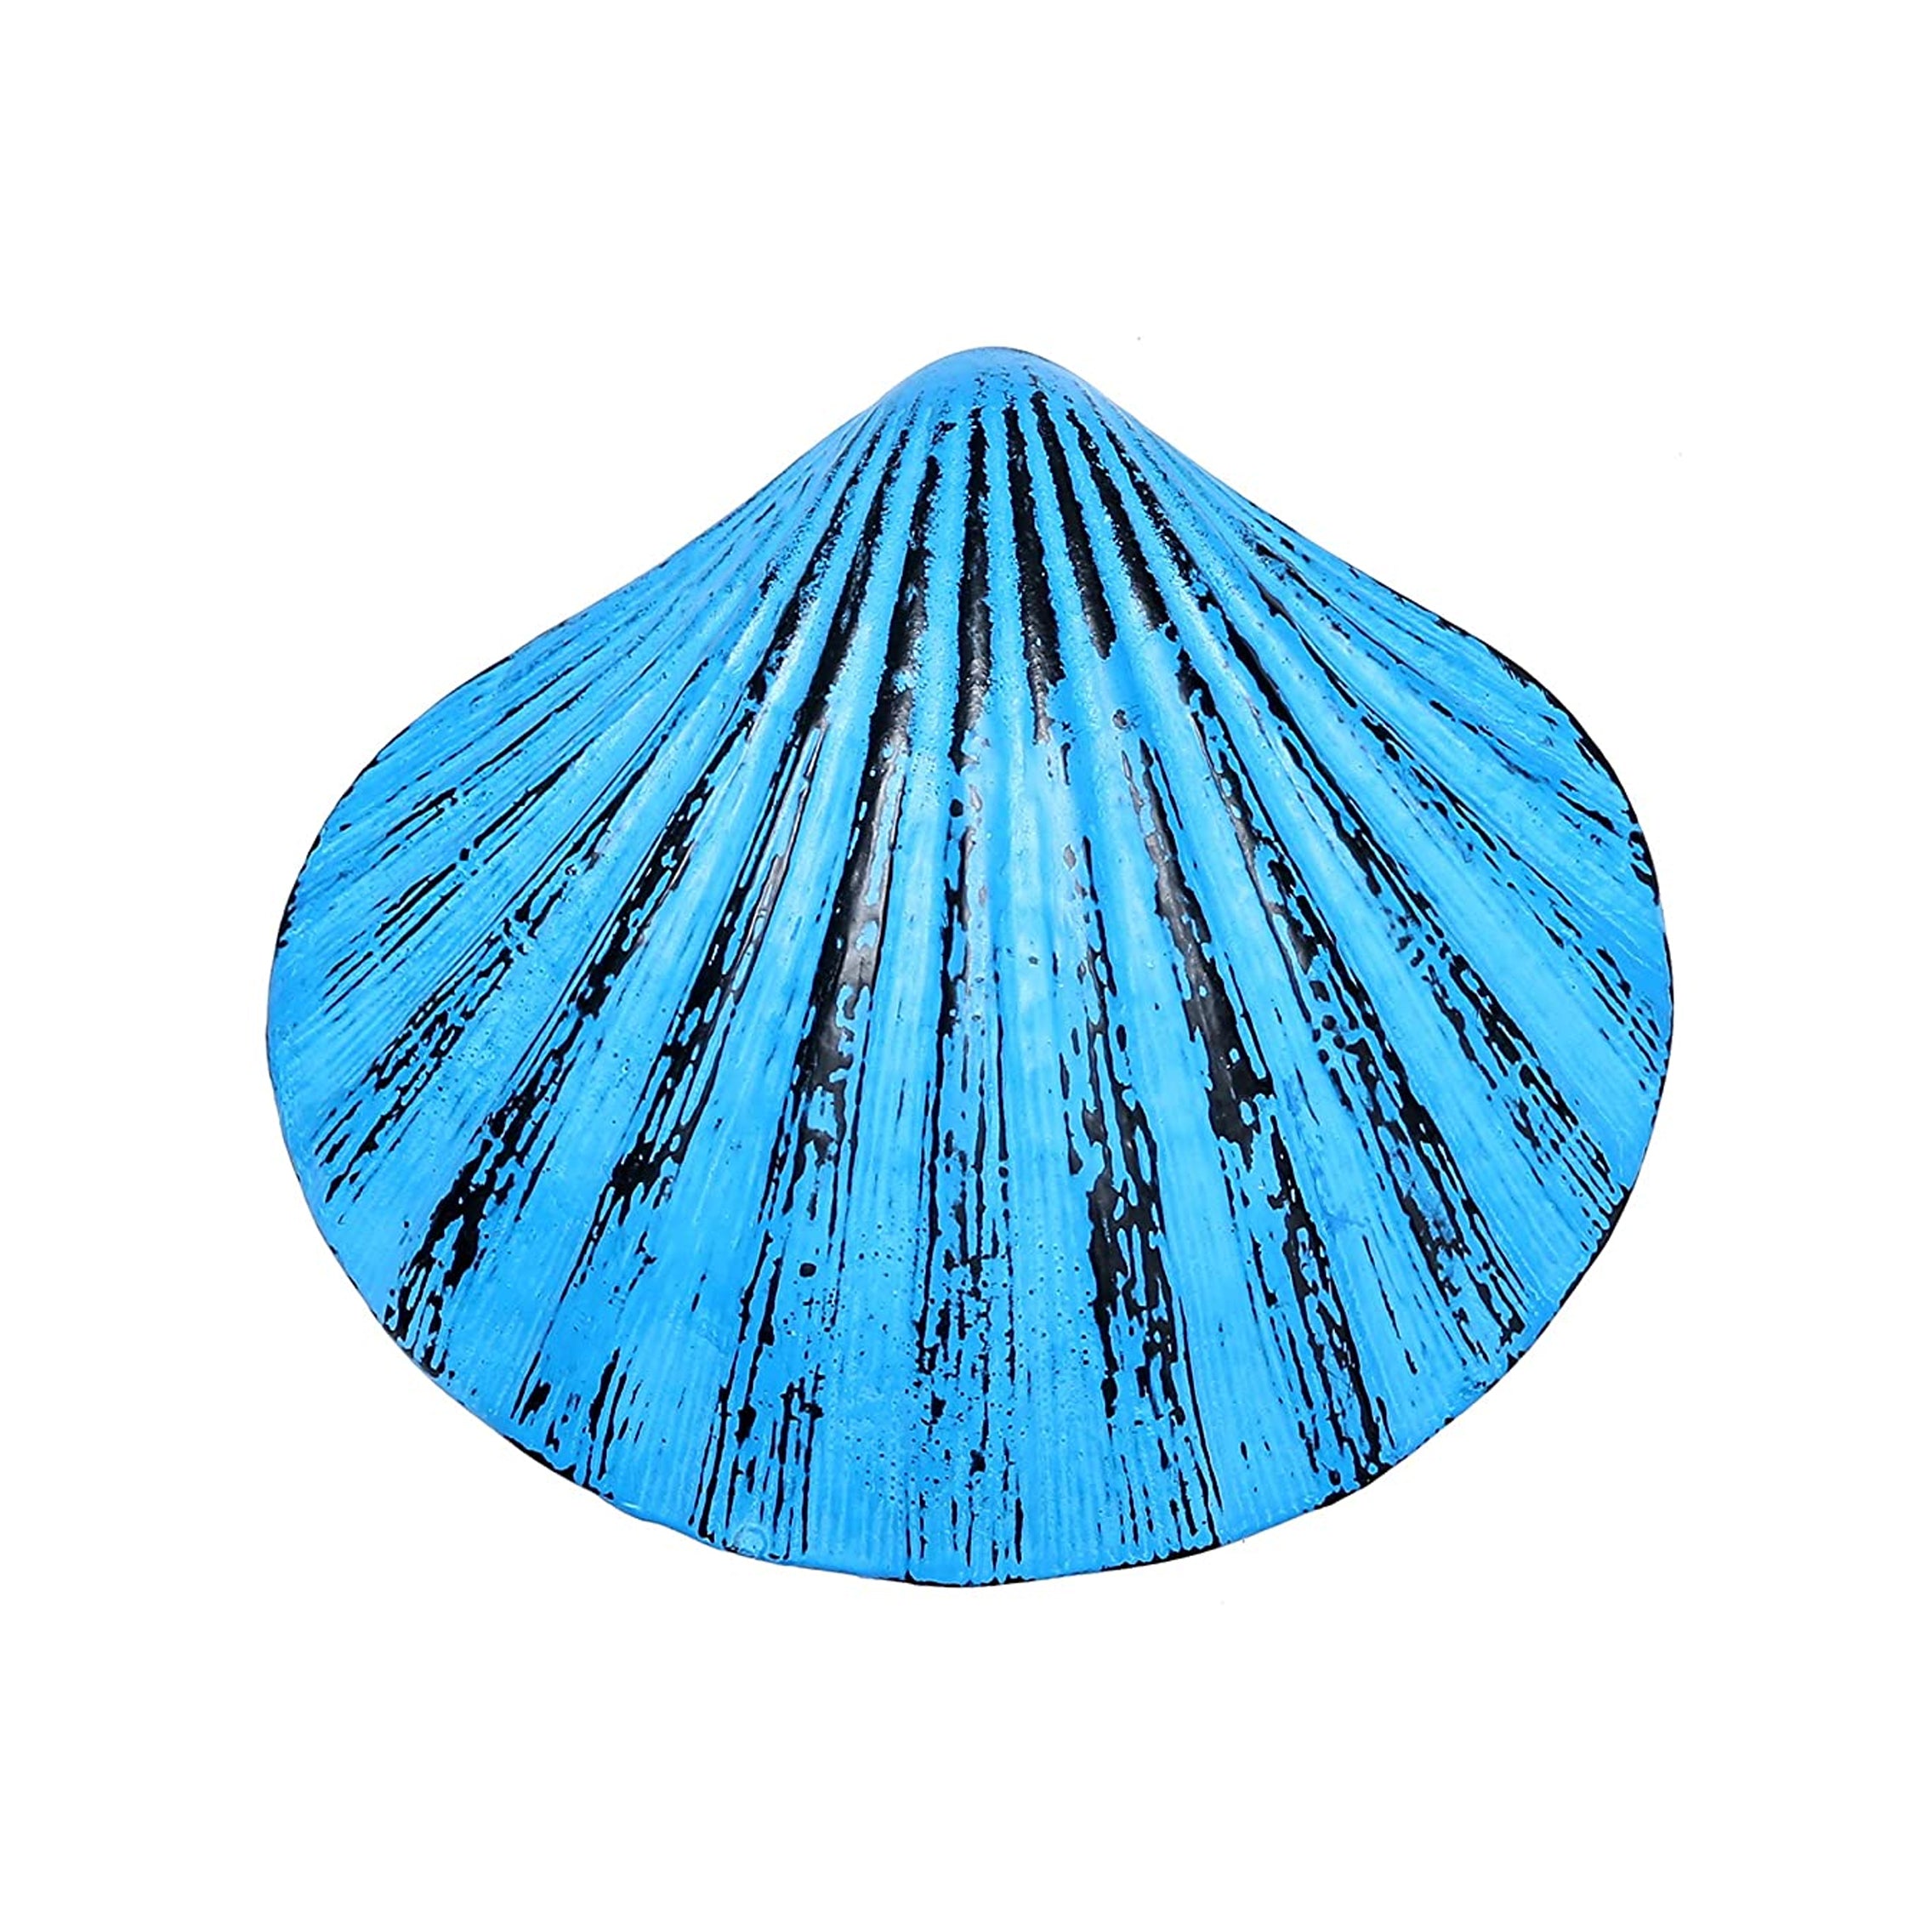 Shell Design Door Knocker - Rustic Blue